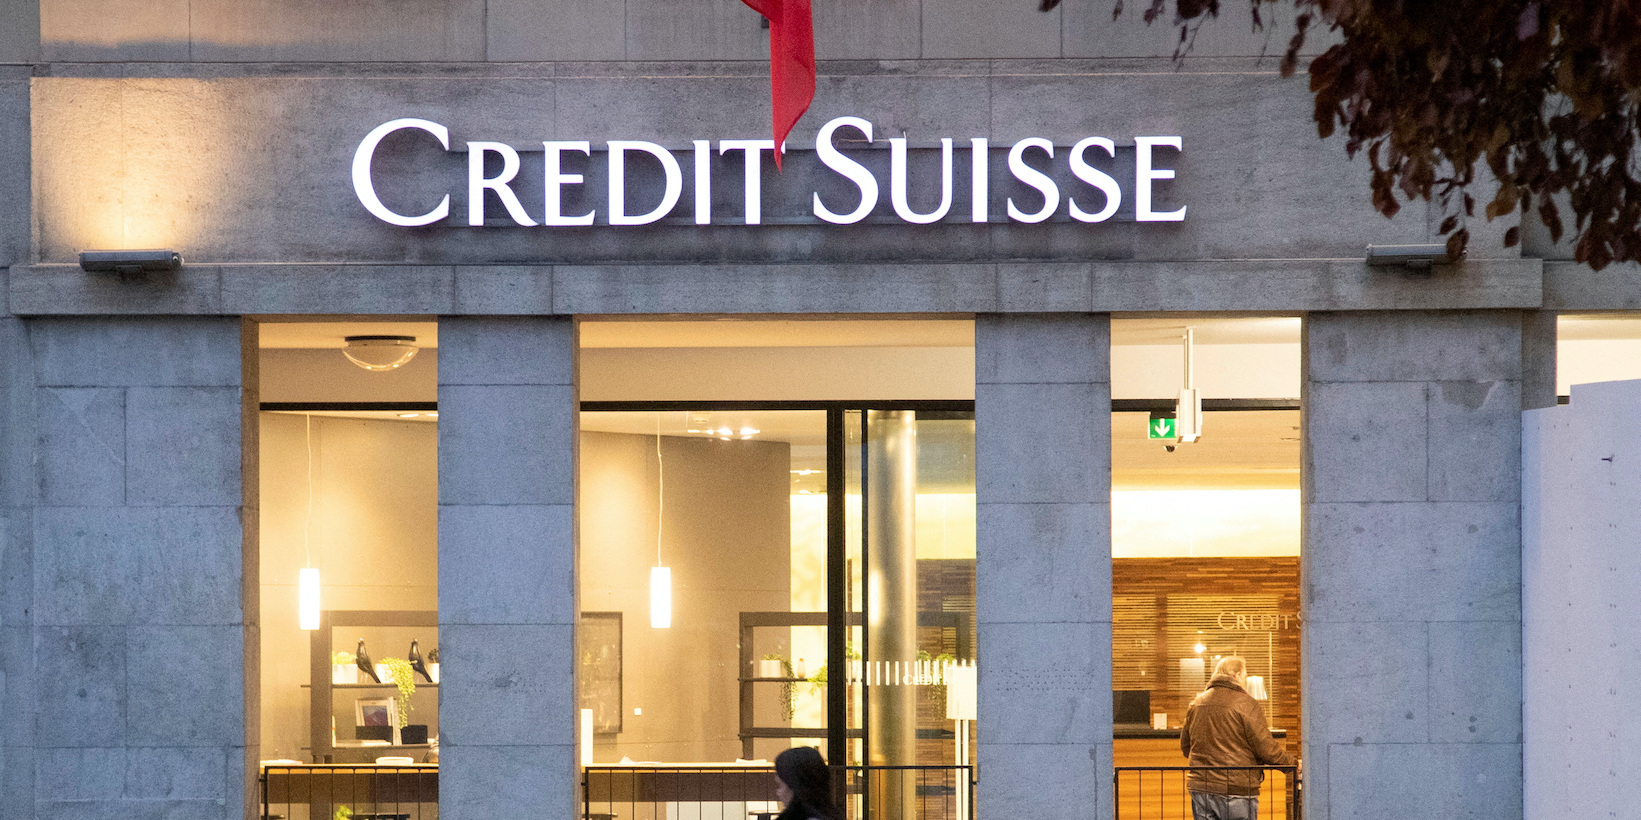 Liquider Credit Suisse aurait « probablement déclenché une crise financière internationale » selon une ministre suisse